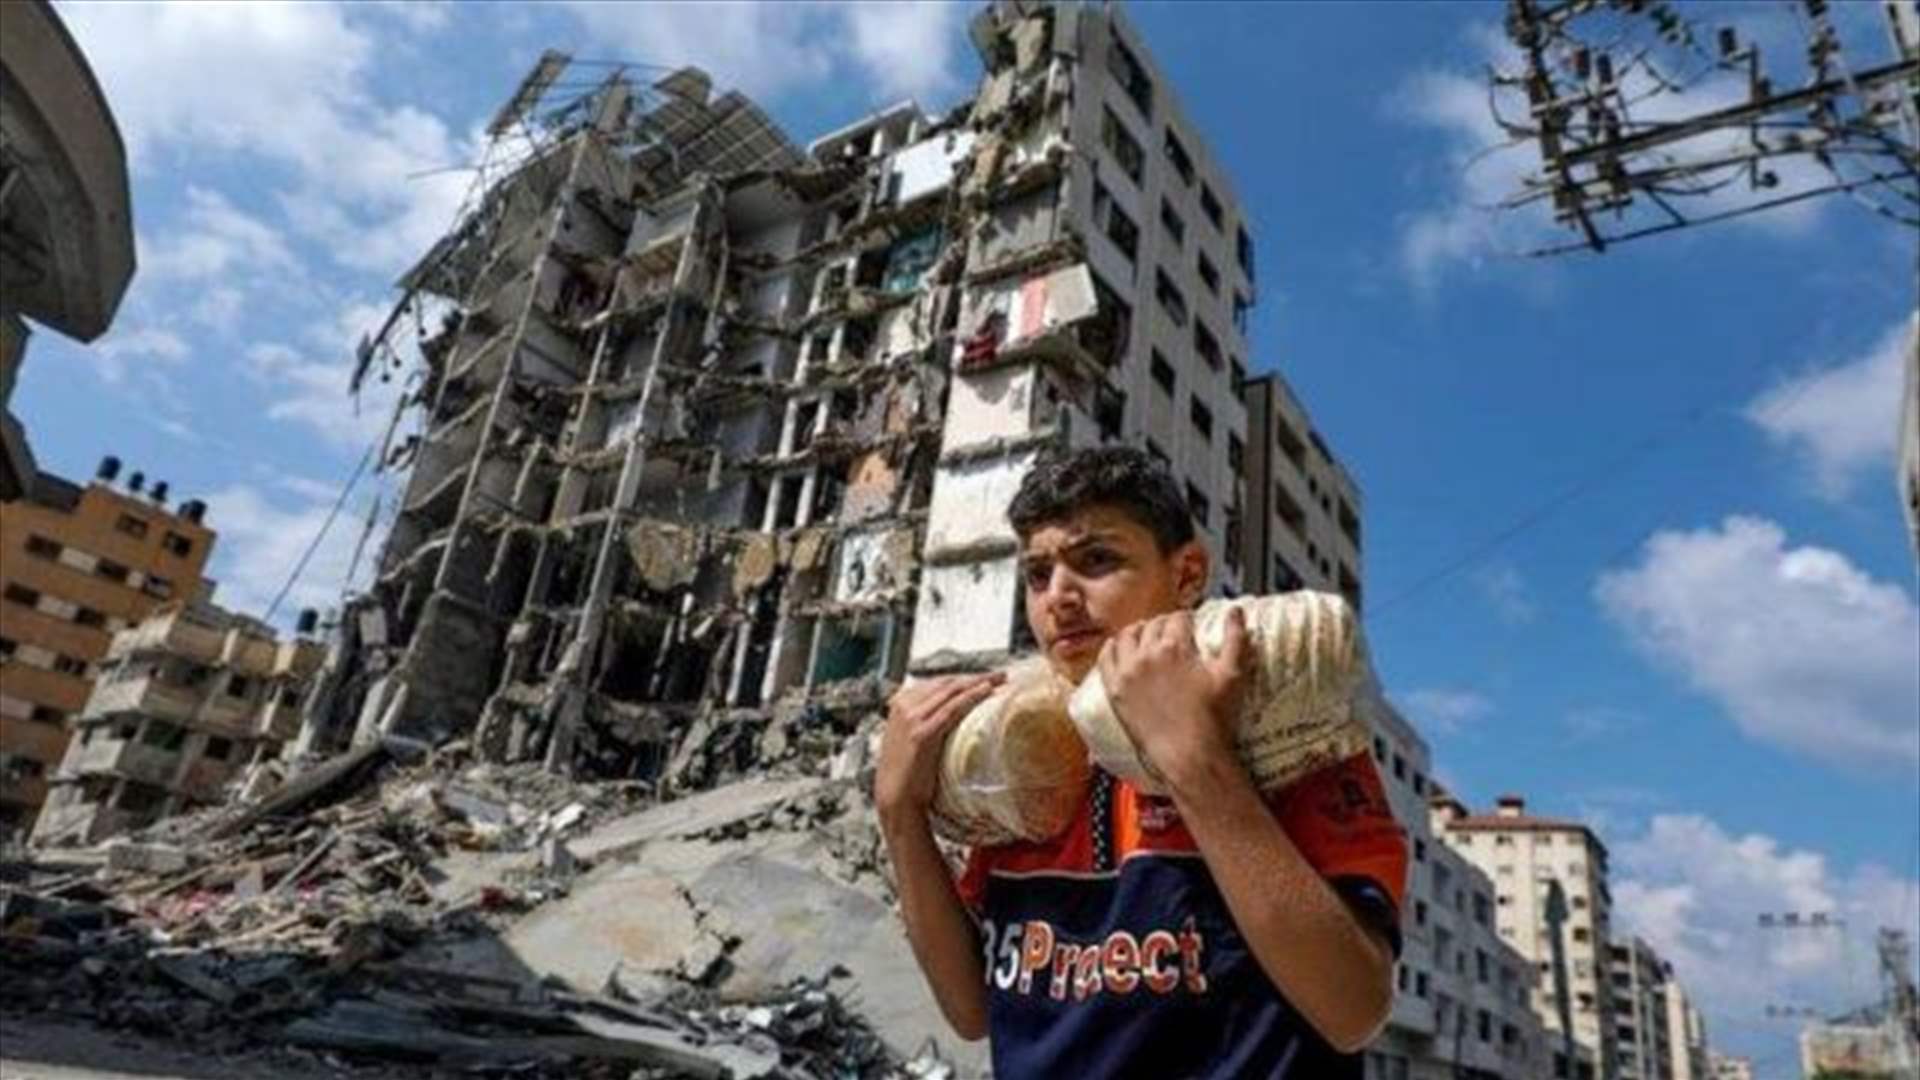 الإحصاء المركزي: 65% من القتلى في غزة هم من الأطفال والنساء